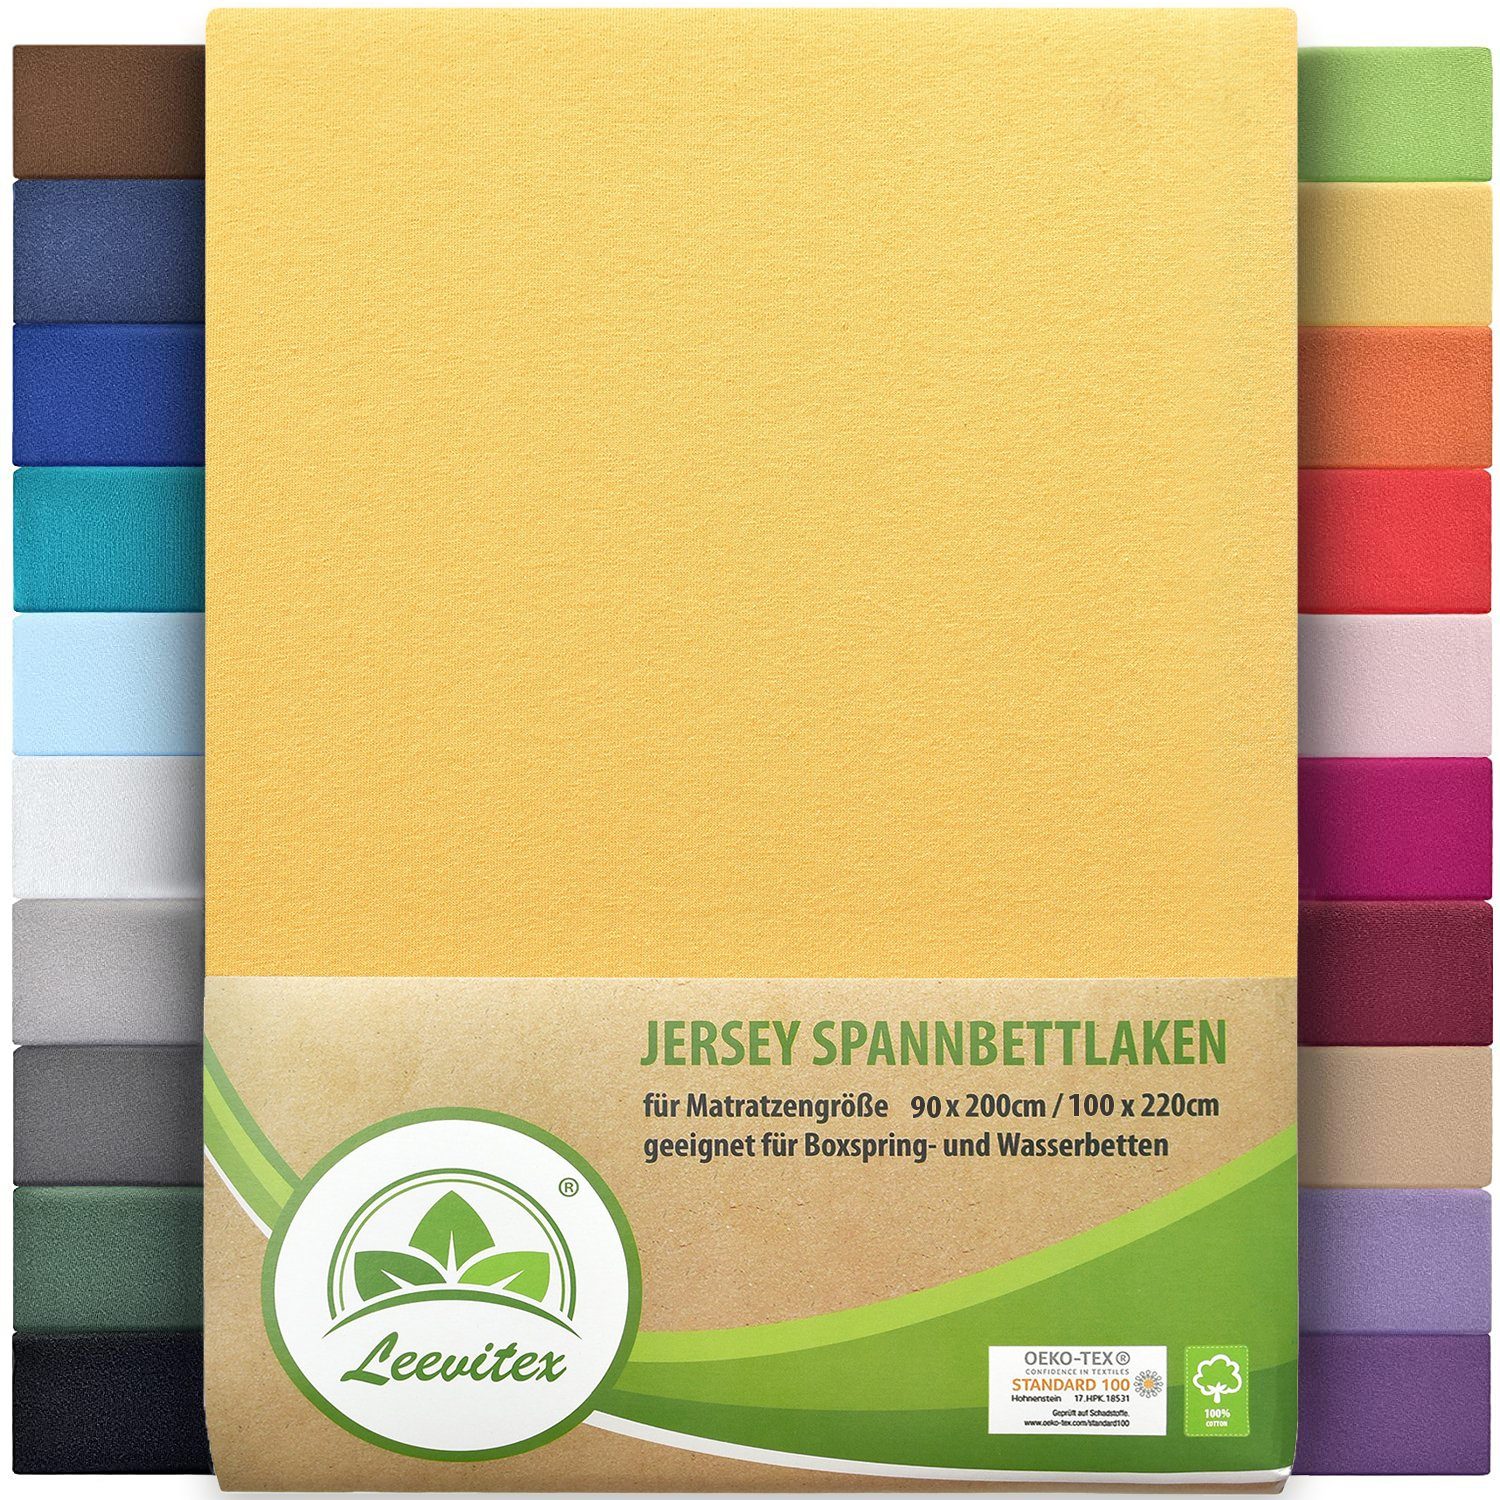 Spannbettlaken Premium 170, leevitex®, Gummizug: rundum, schwer und dick, 100% Jersey-Baumwolle, auch Boxspringbett geeignet Gelb / Mais